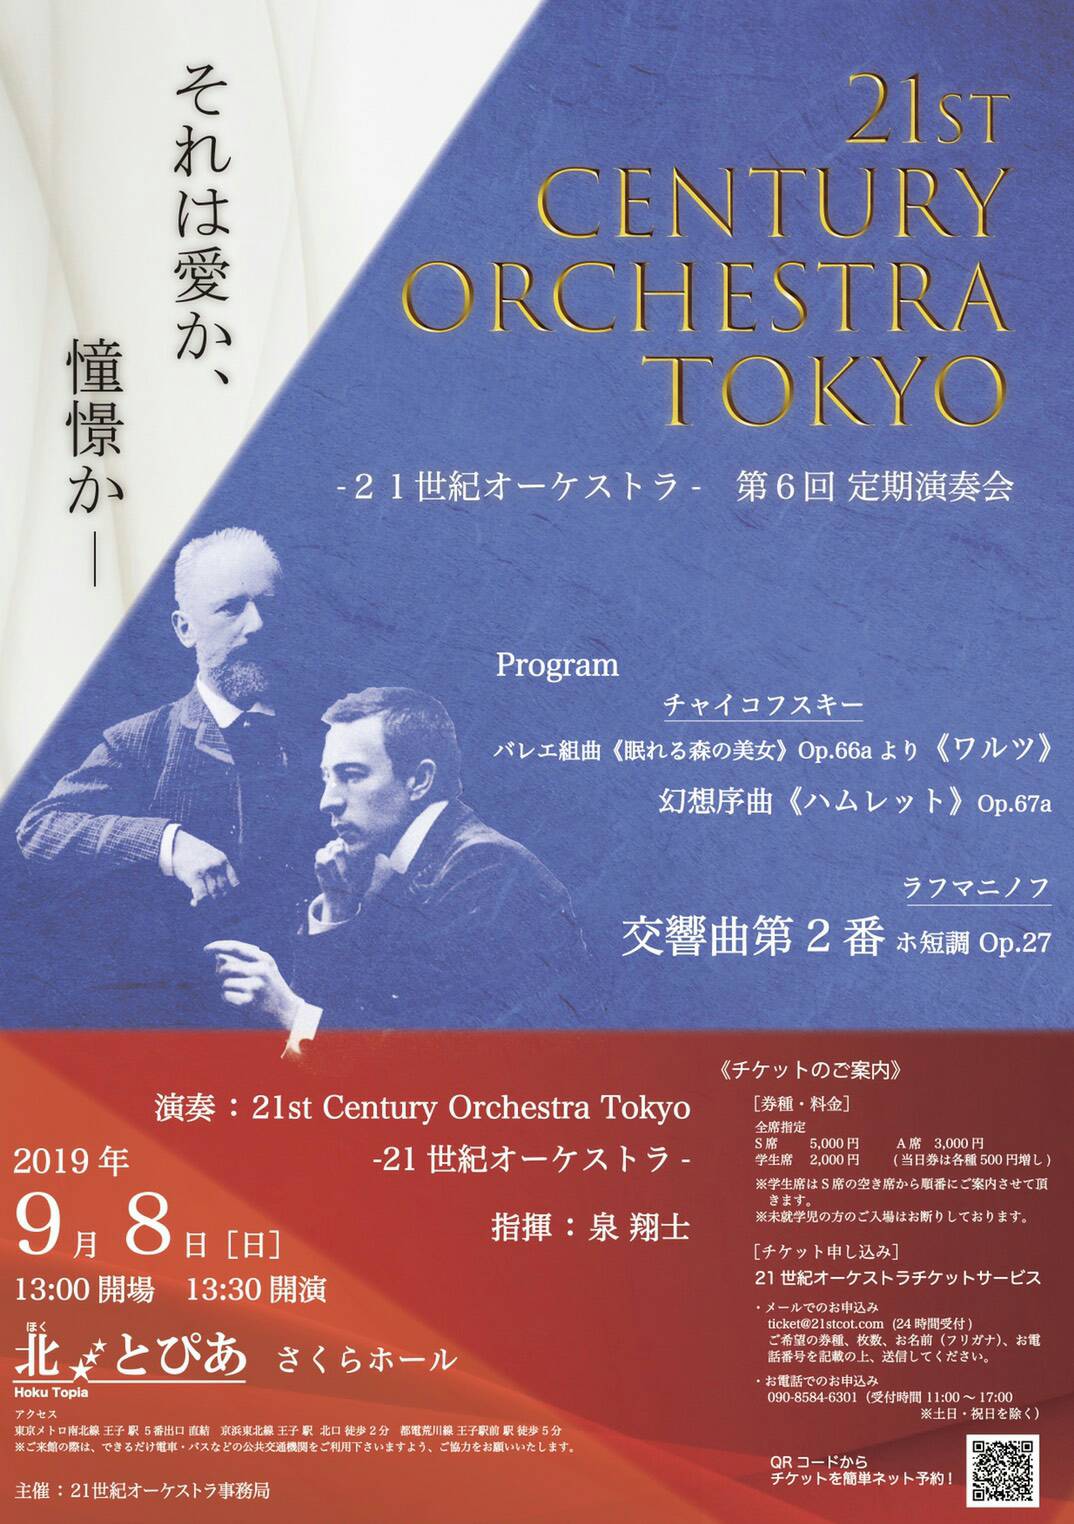 21st Century Orchestra Tokyo